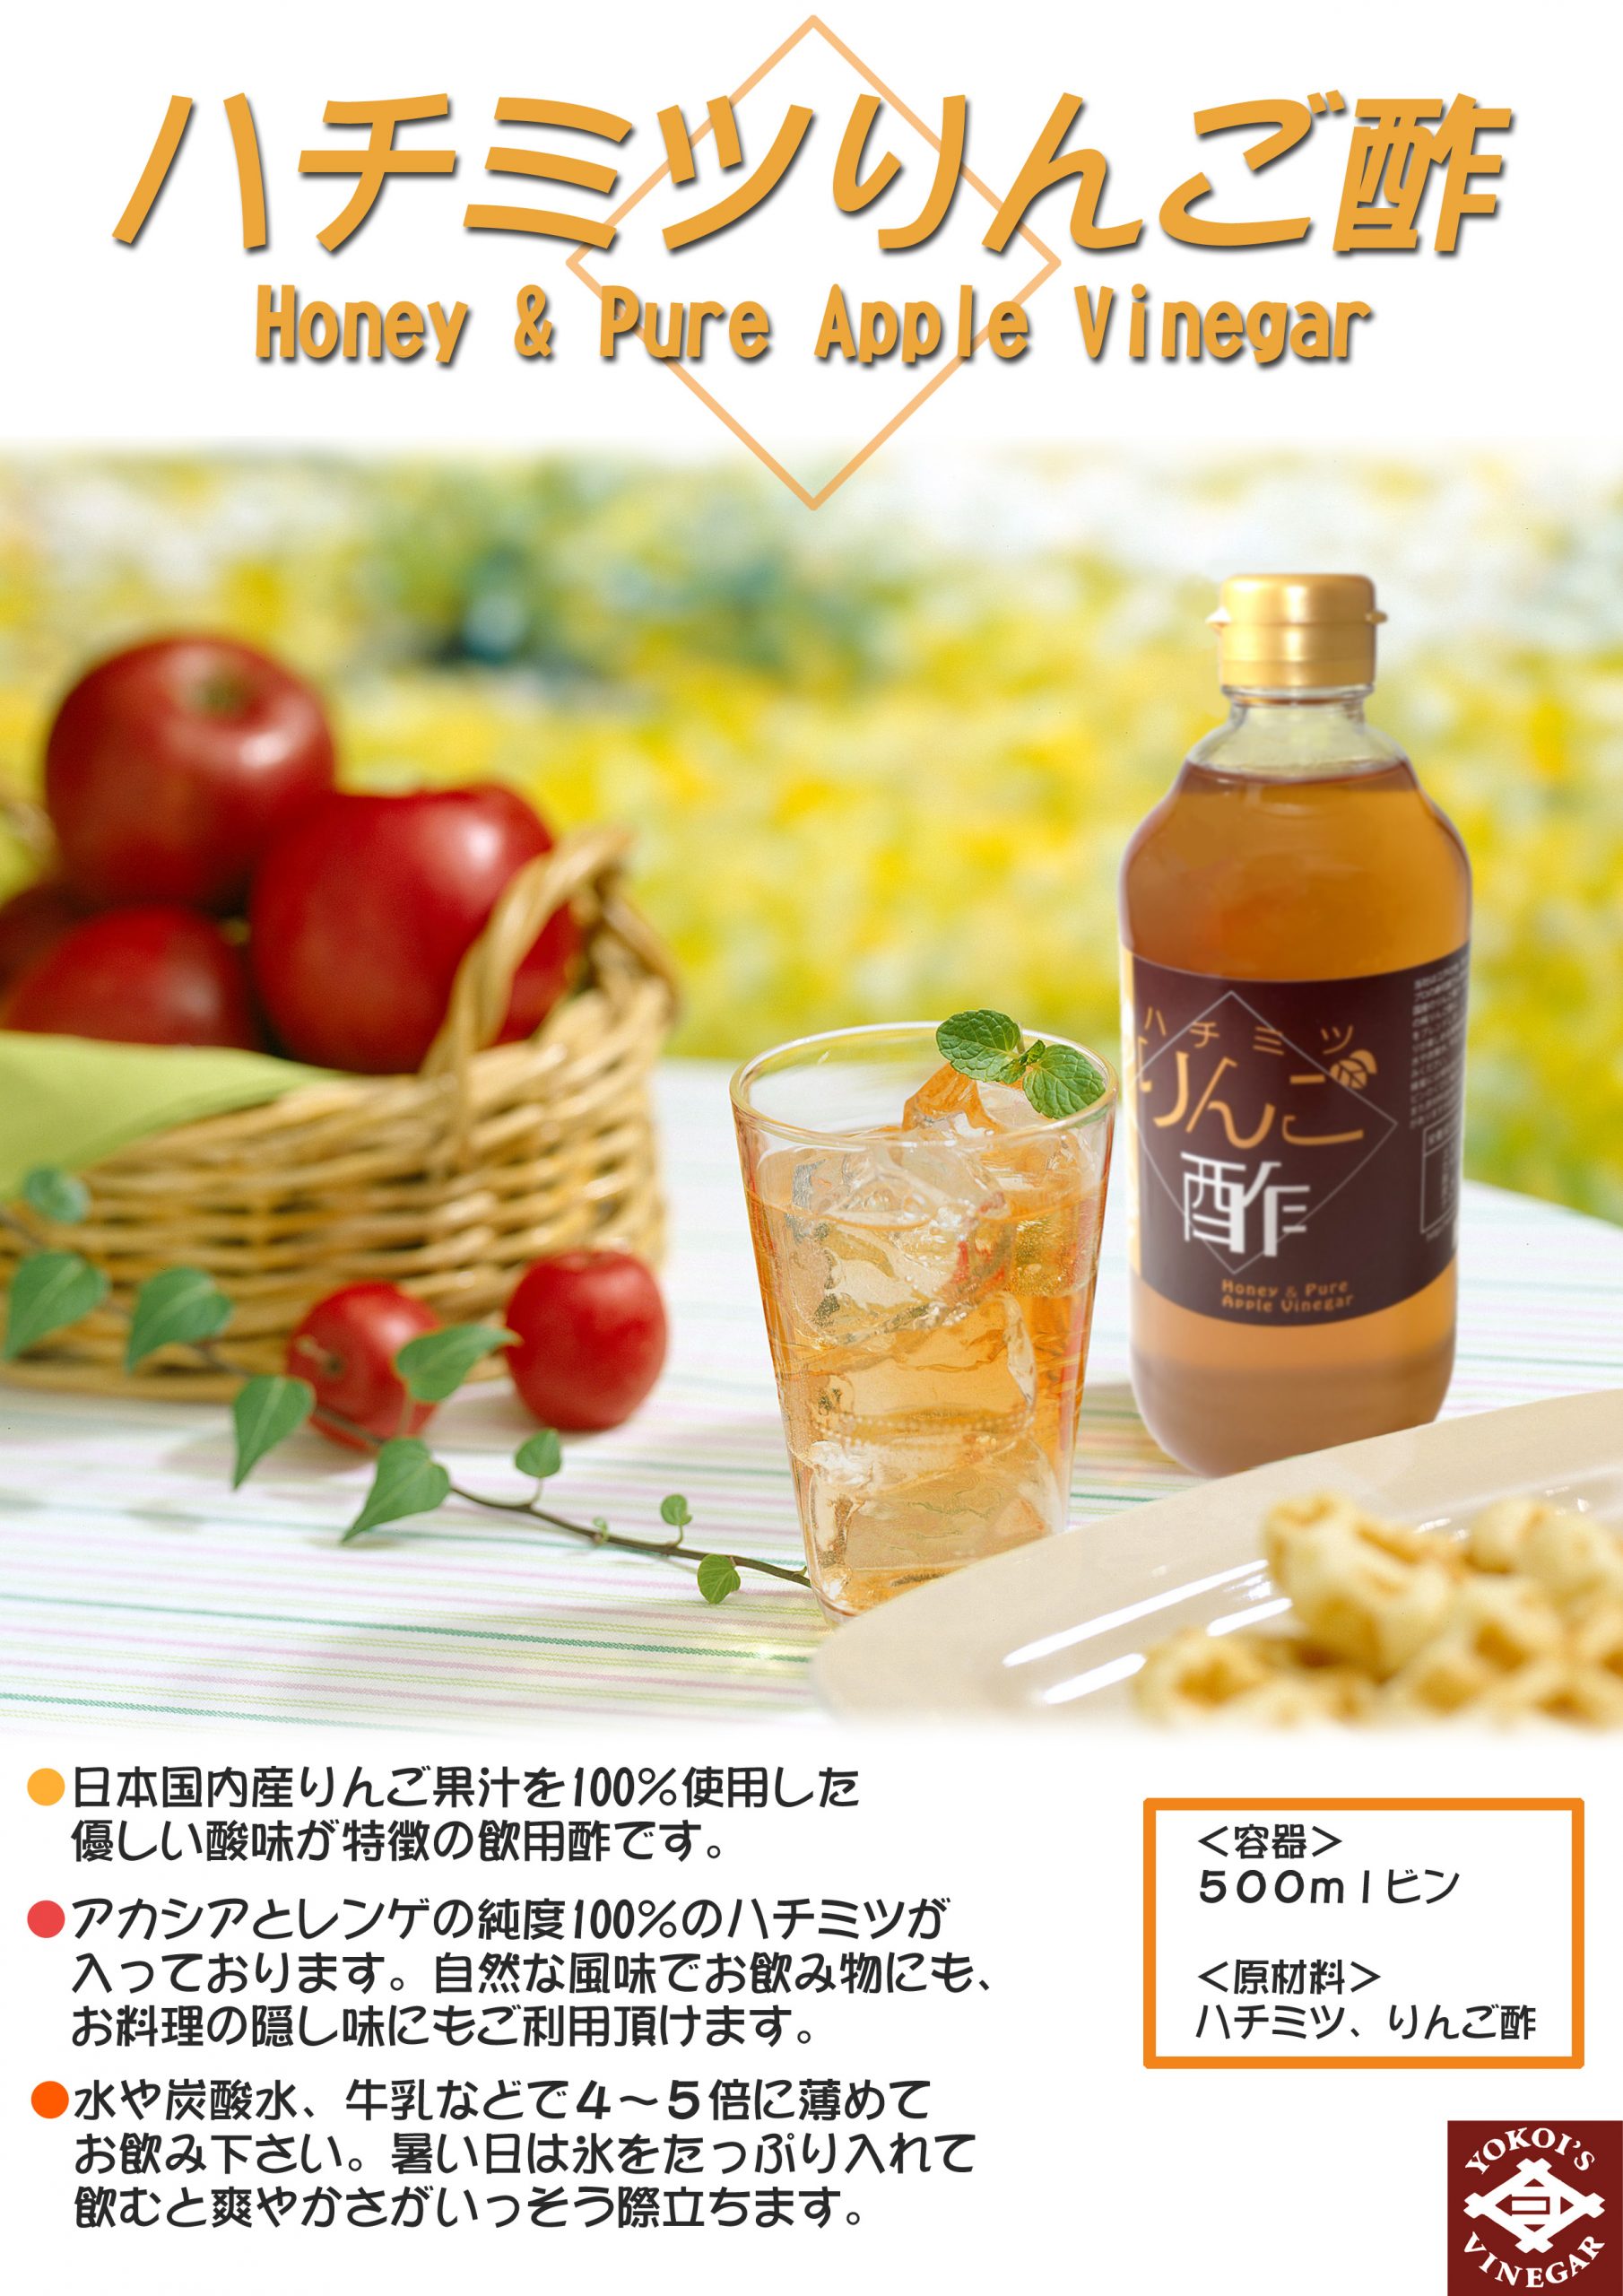 横井 ハチミツりんご酢 500ml - 水・ソフトドリンク